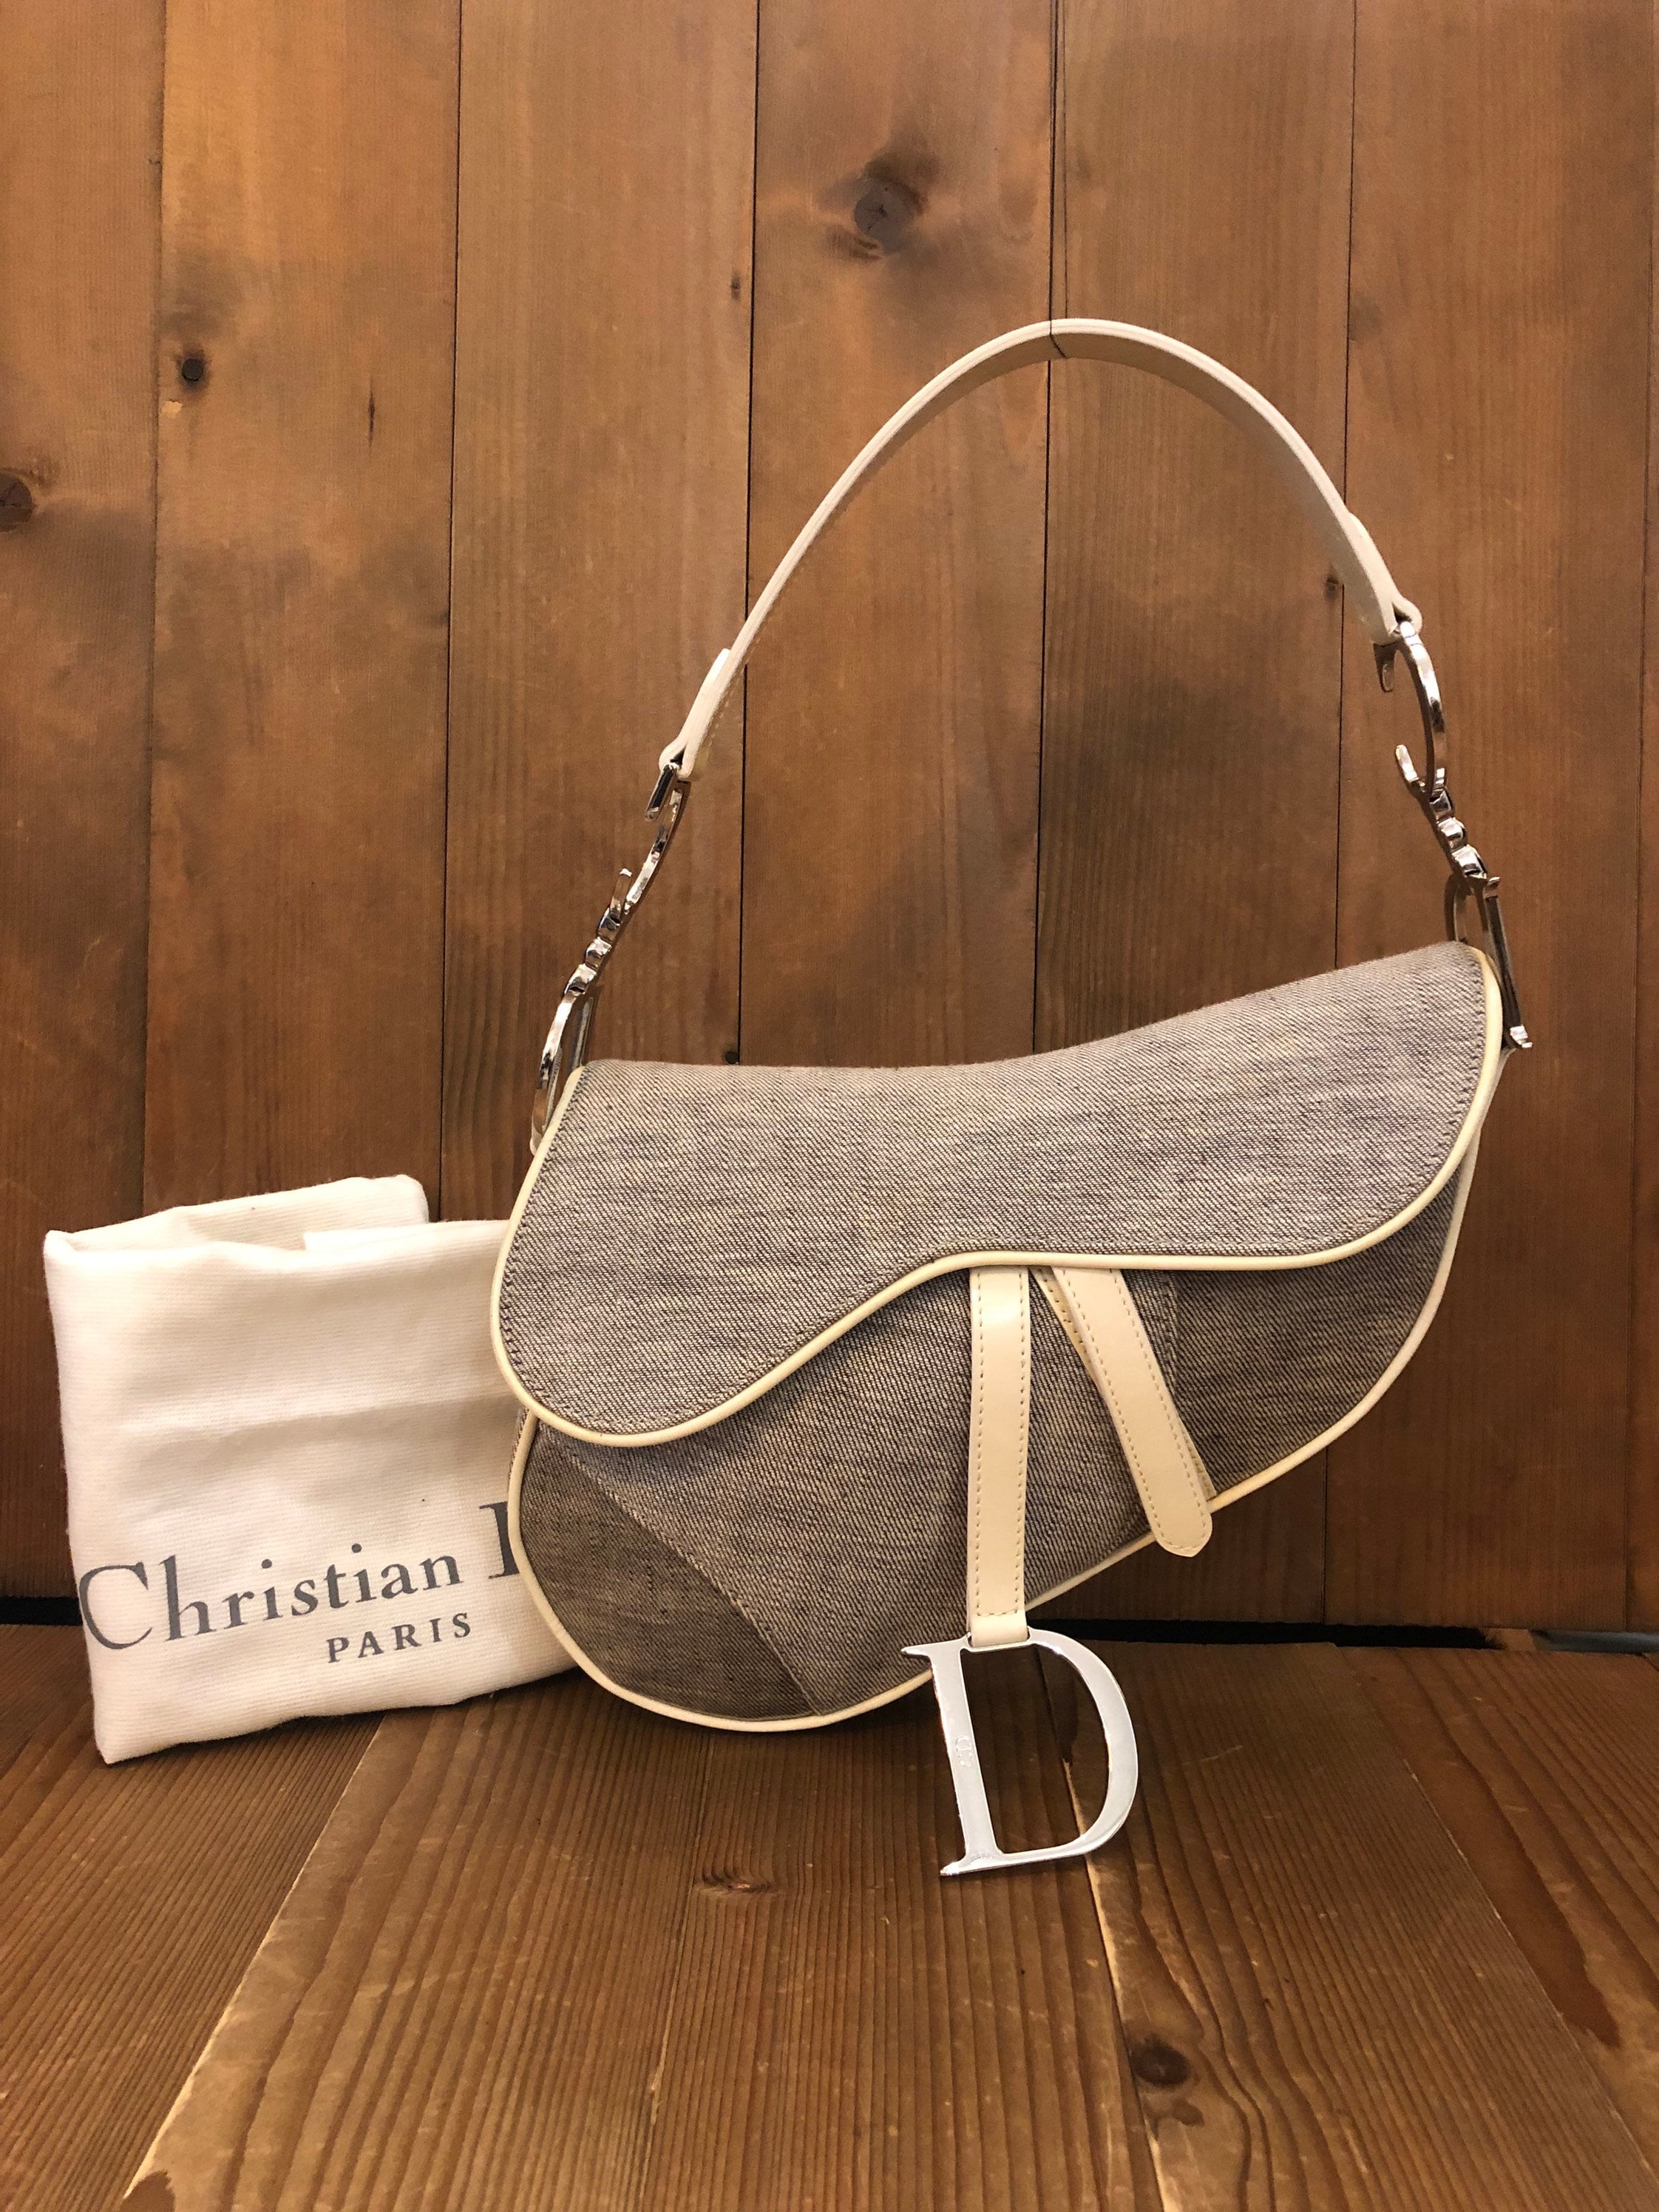 Designer Saddle Bags - Christmas